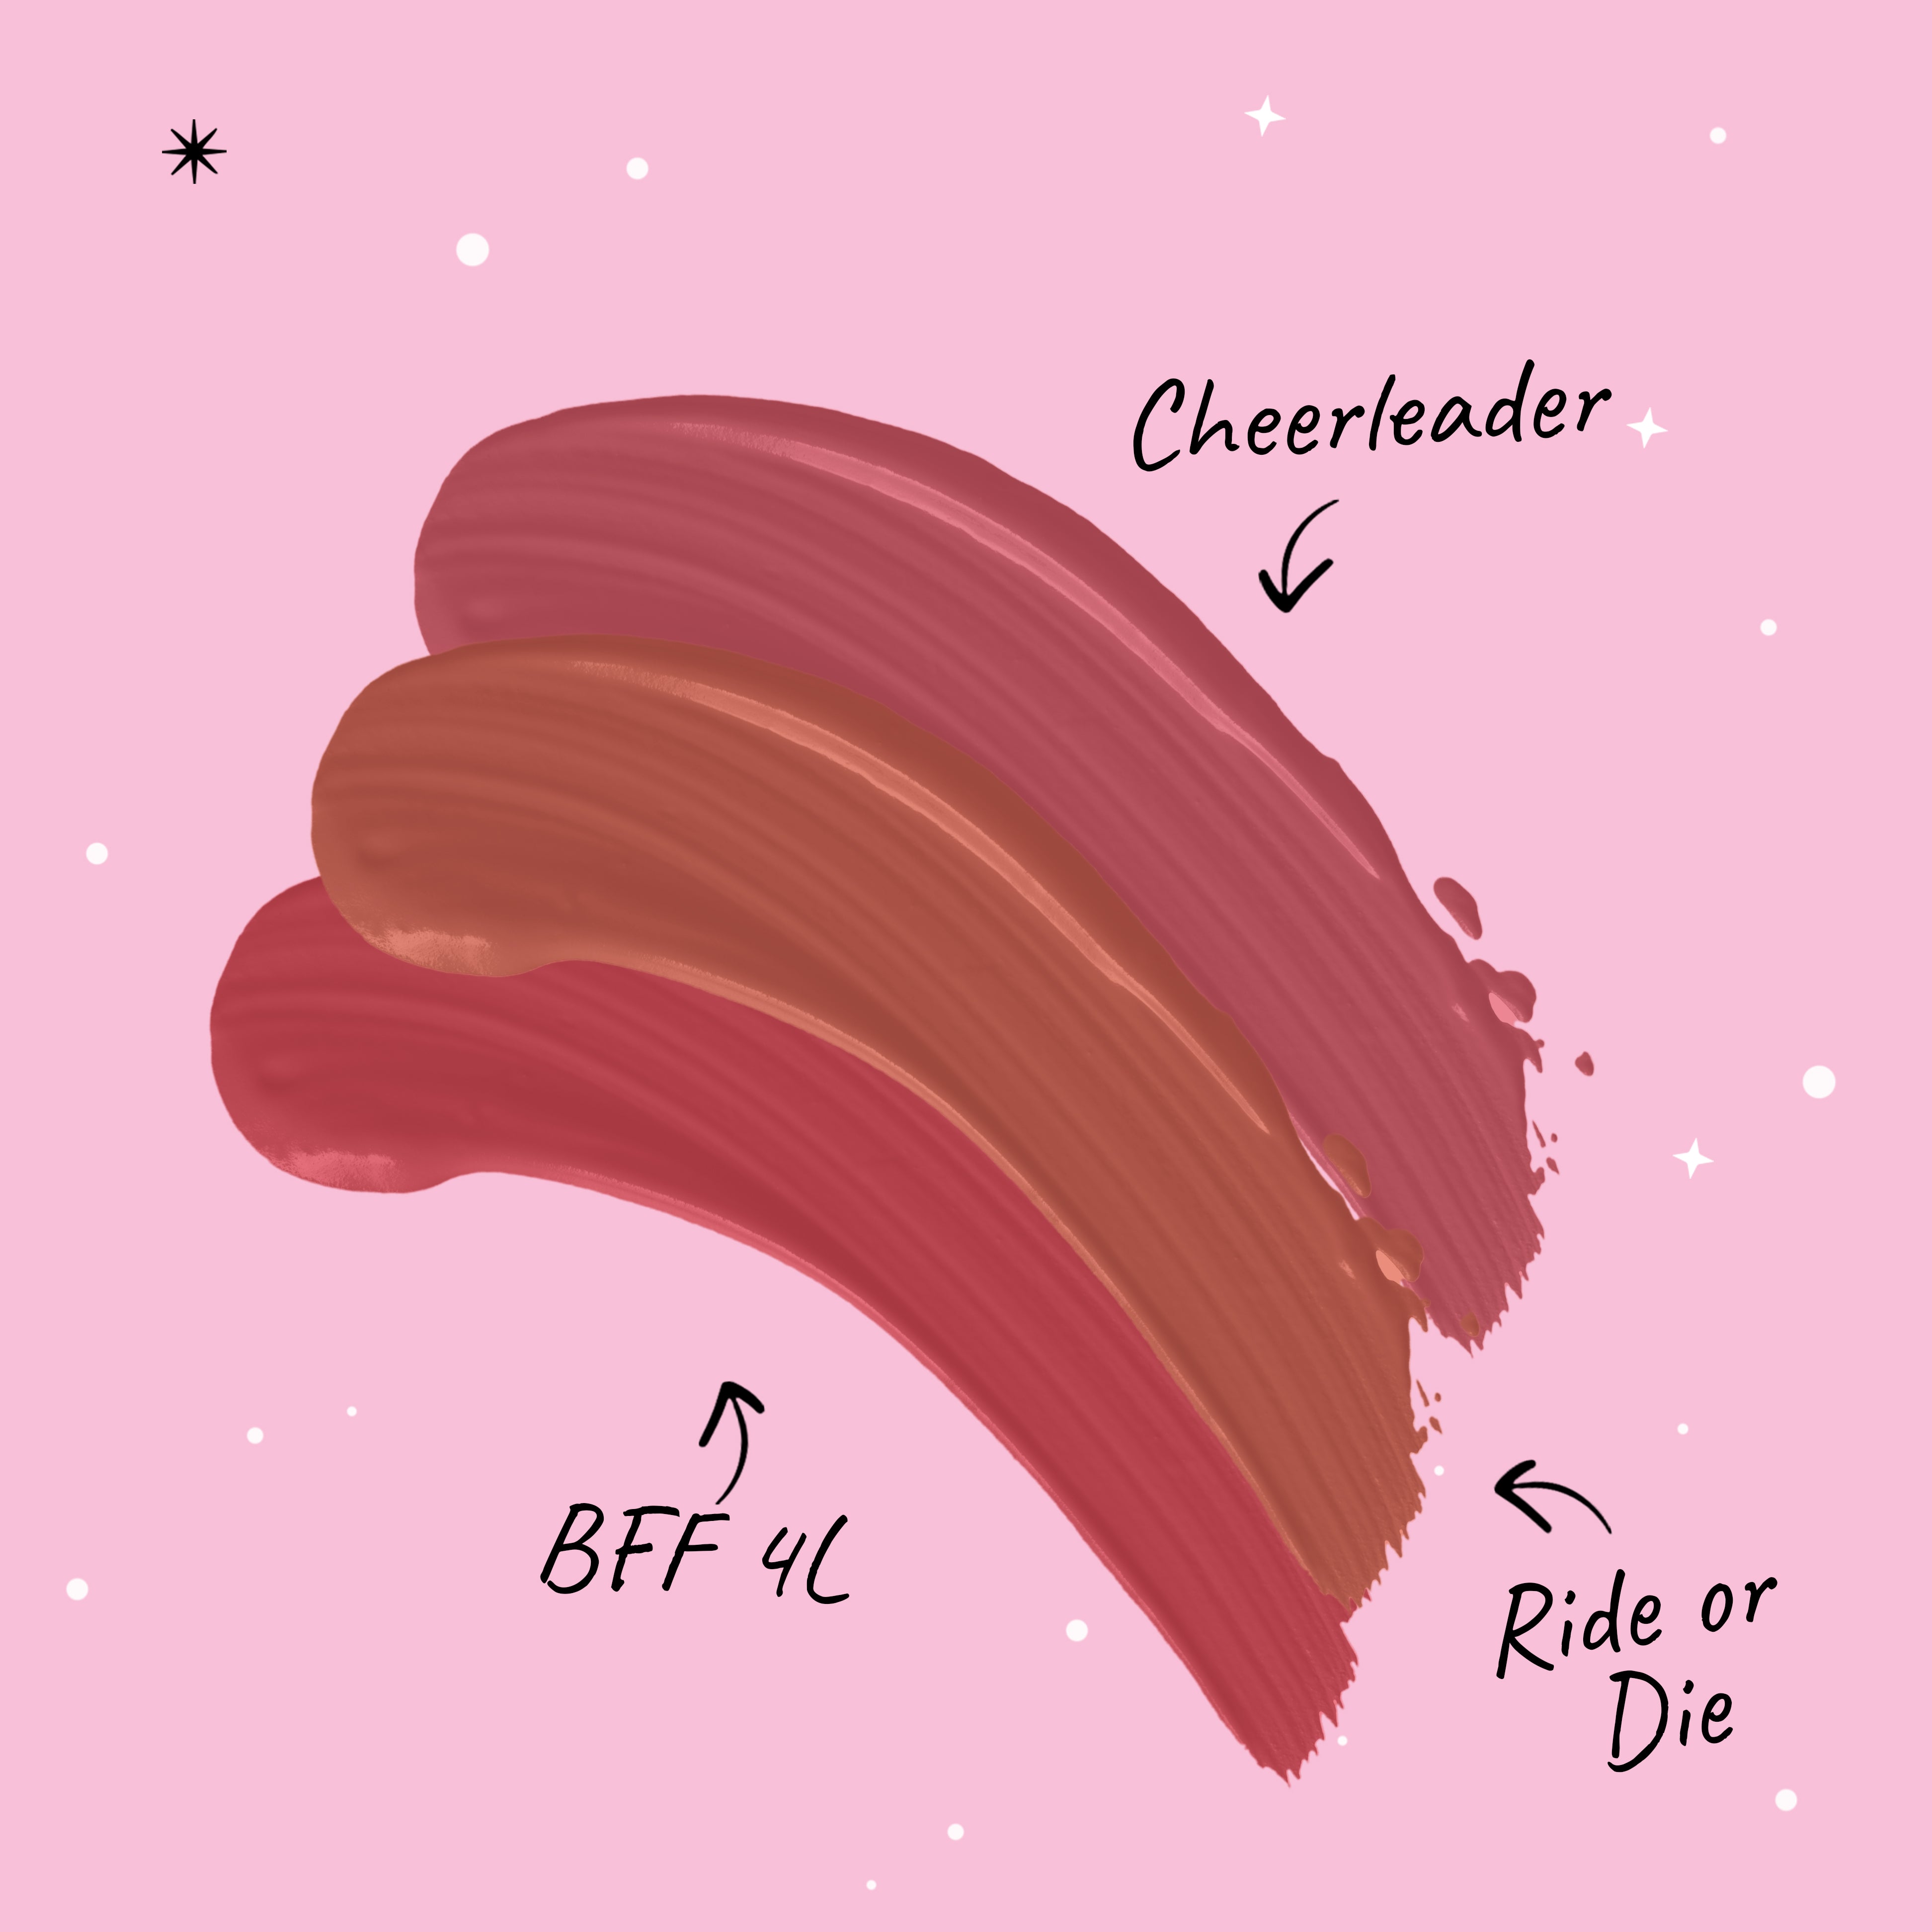 MyGlamm POPxo Makeup Homegirls Liquid Lipstick kit-Cheerleader, Ride or Die, BFF 4L-1.5g x 3gm